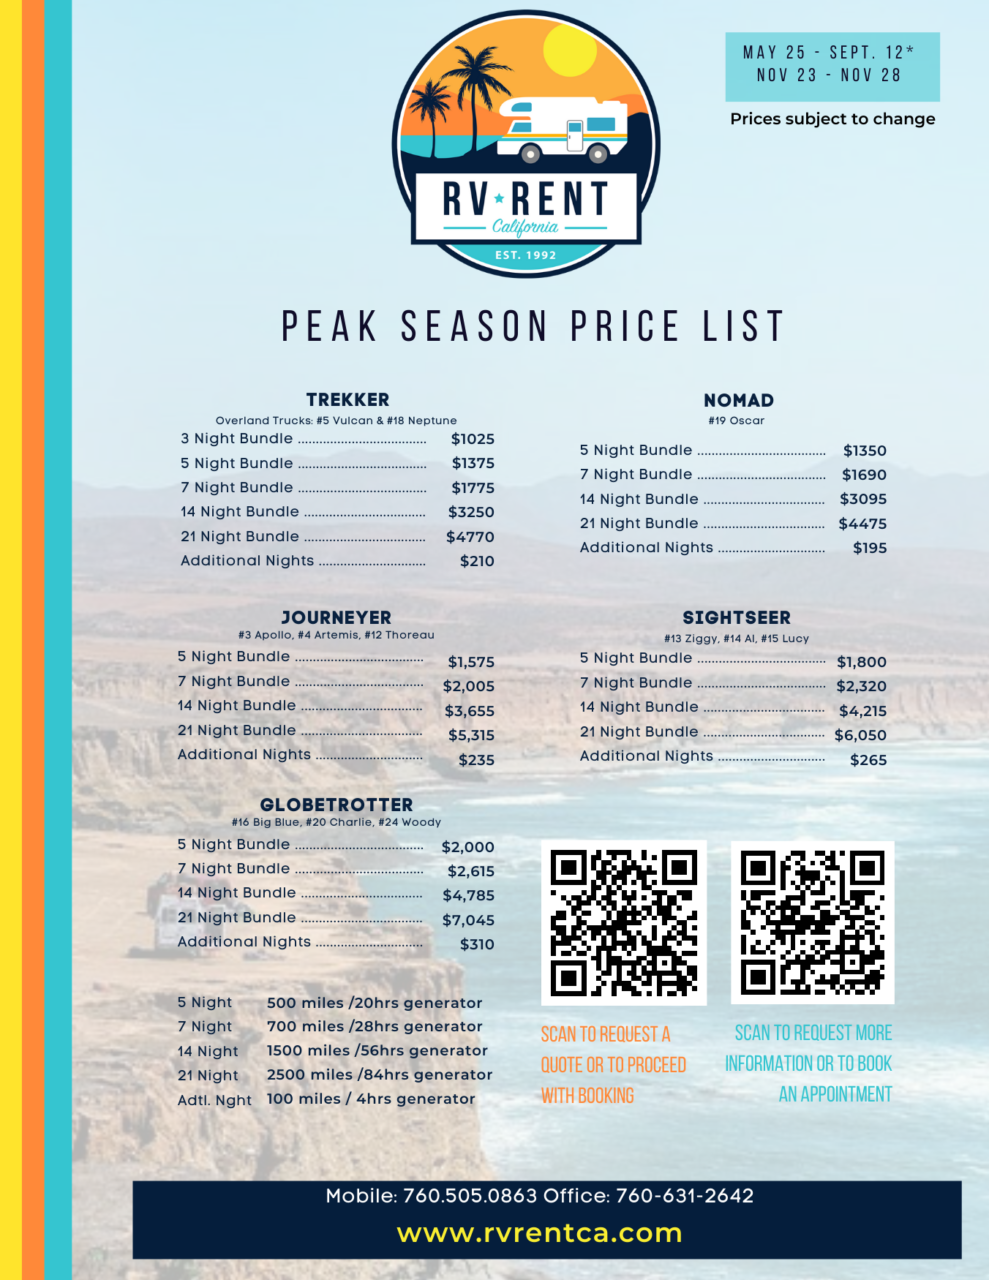 Peak Season Price List